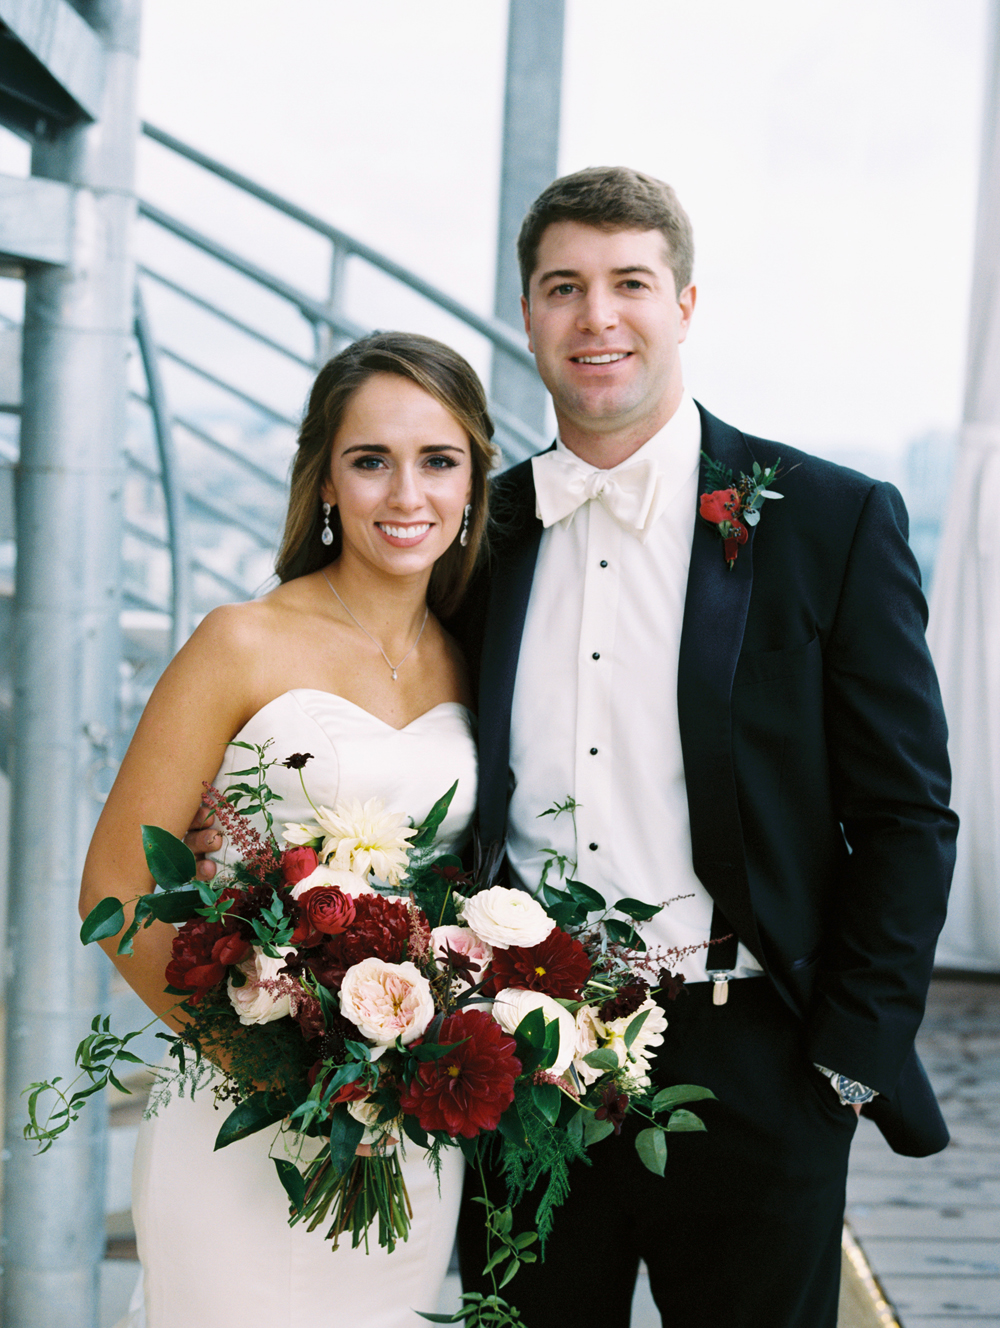 Rooftop bride and groom portraits // Nashville Wedding Floral Design